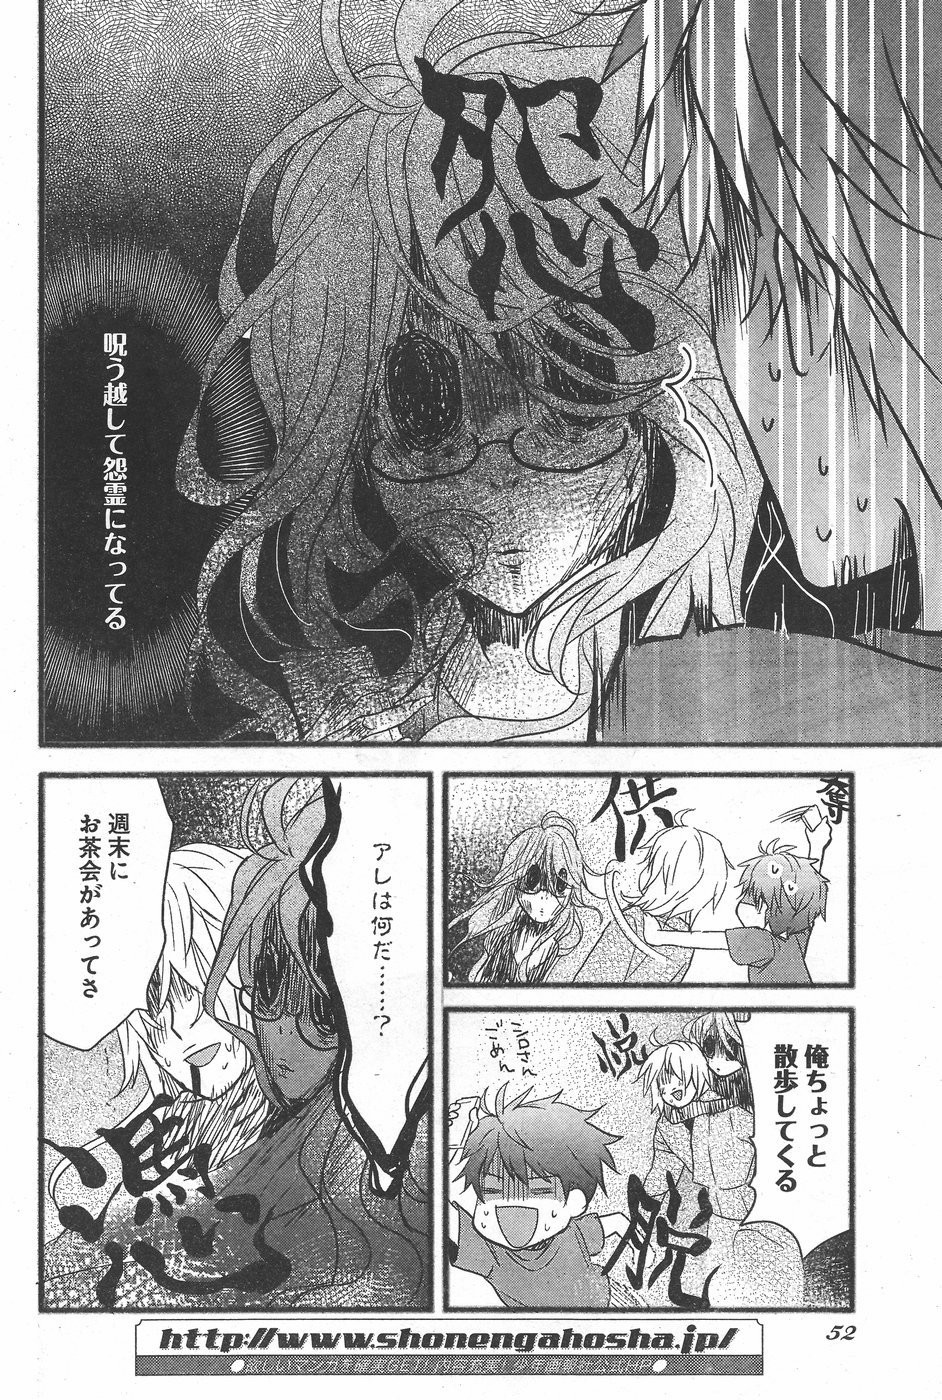 Bokura wa Minna Kawaisou - Chapter 71 - Page 4